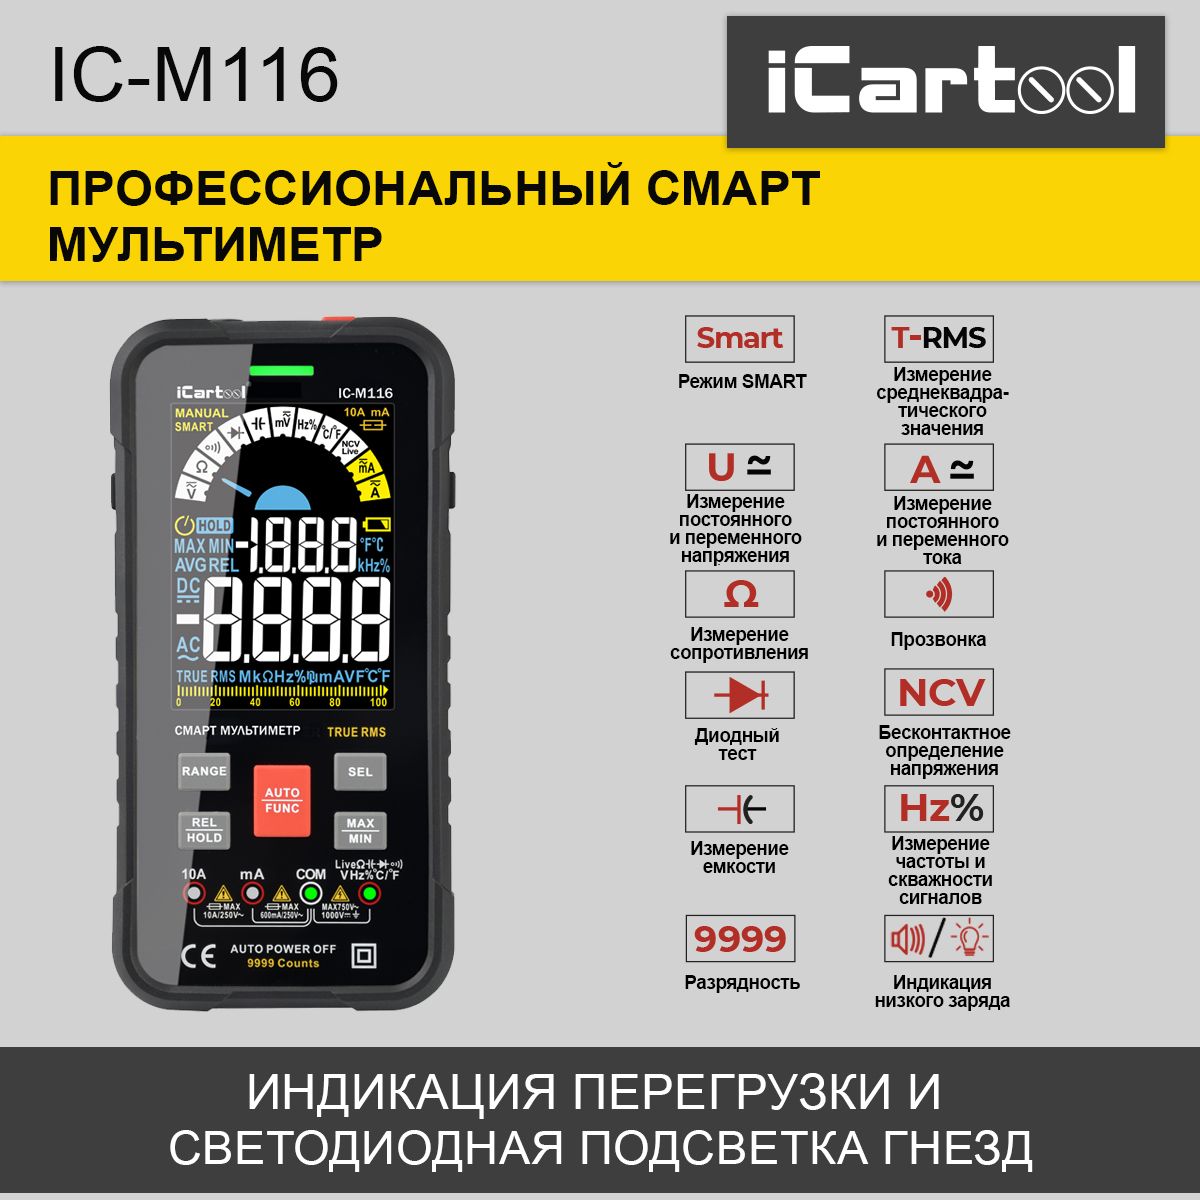 Профессиональный смарт мультиметр iCartool IC-M116 профессиональный цифровой мультиметр icartool ic m120